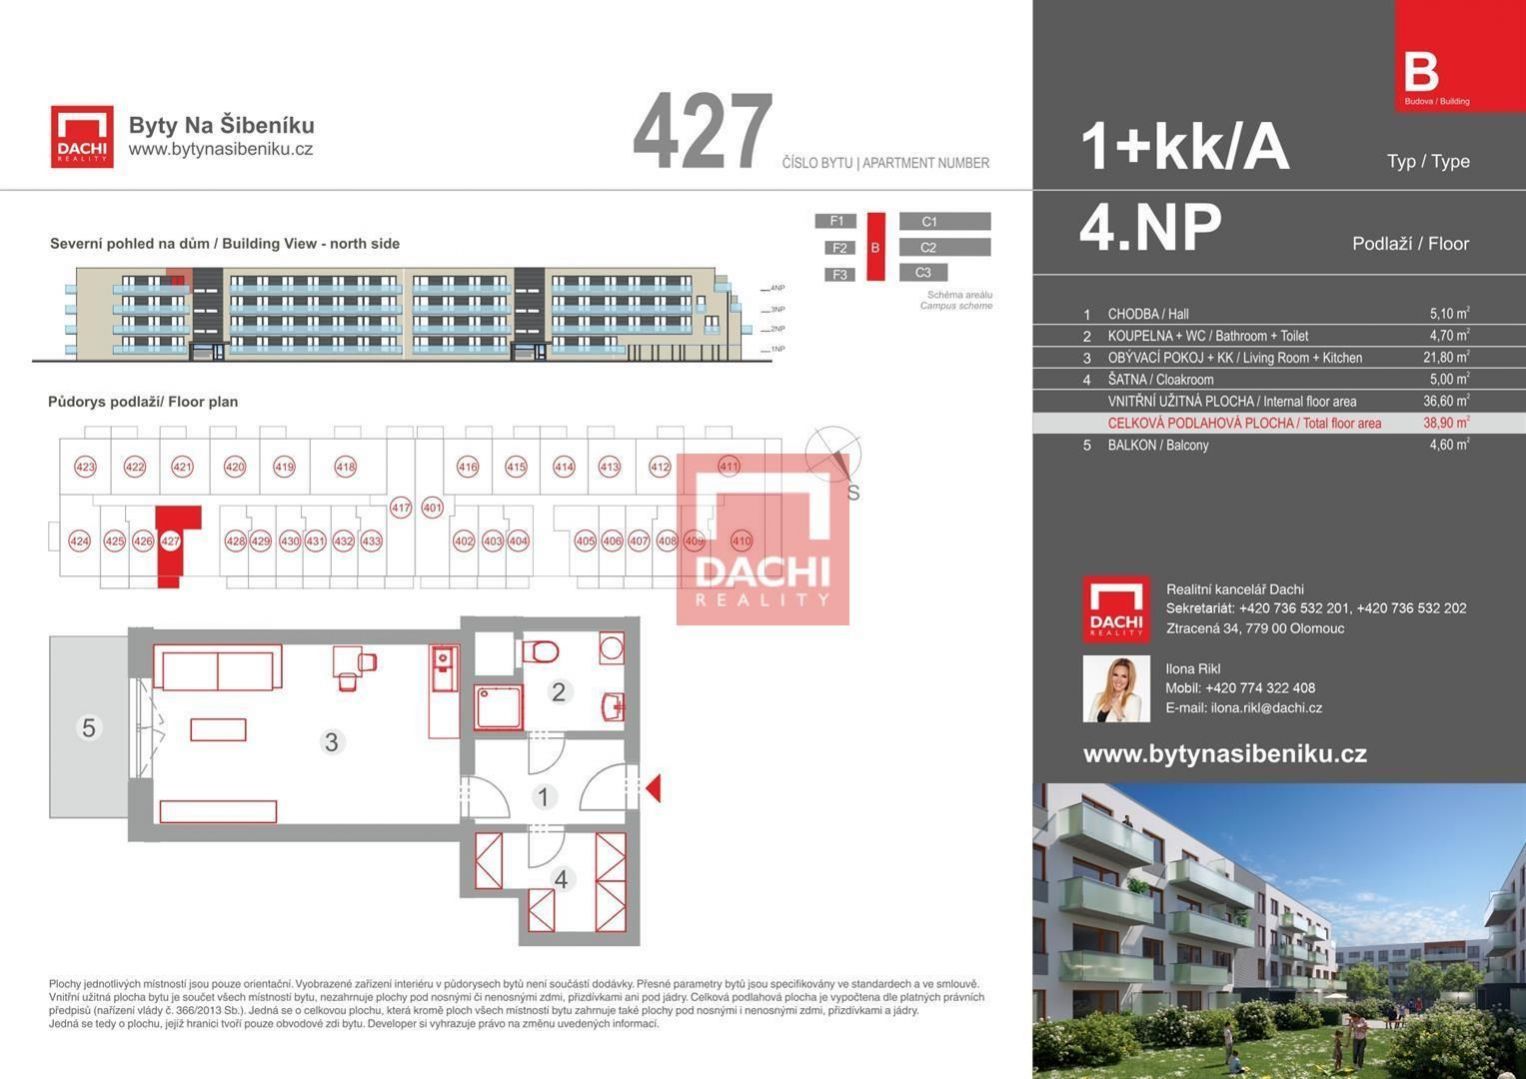 Prodej novostavby bytu B.427  1+kk  38,90m s balkonem 5,30m, Olomouc, Byty Na Šibeníku II.etapa, obrázek č. 3